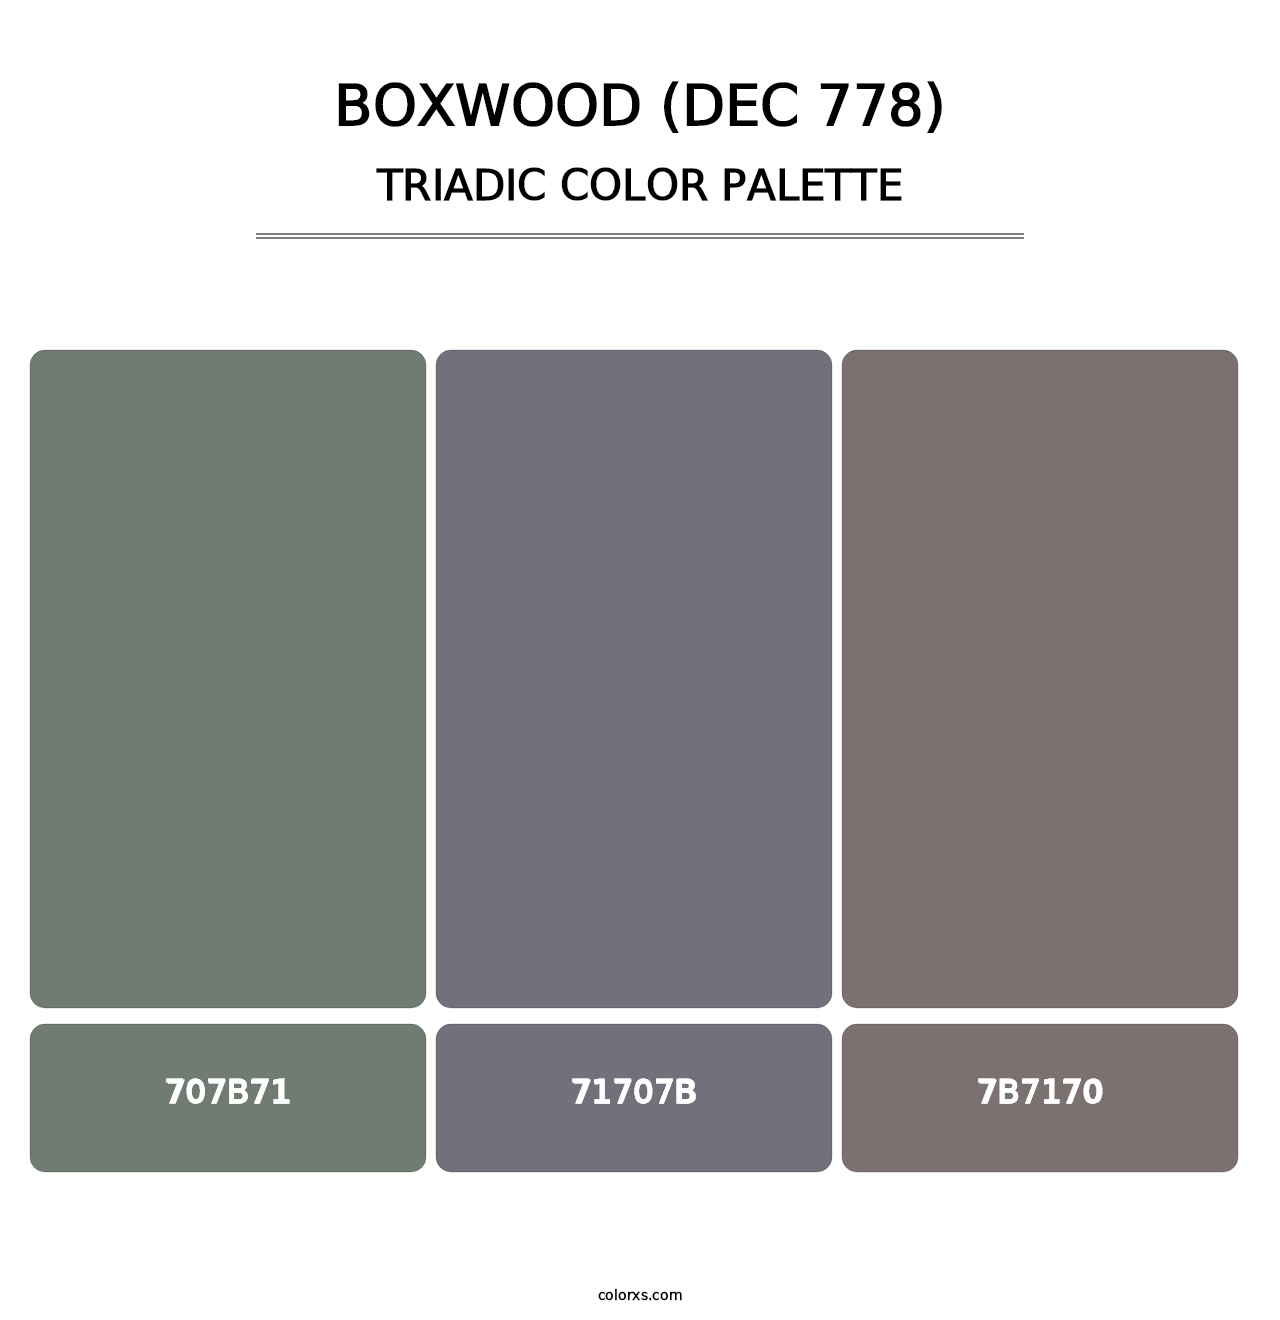 Boxwood (DEC 778) - Triadic Color Palette